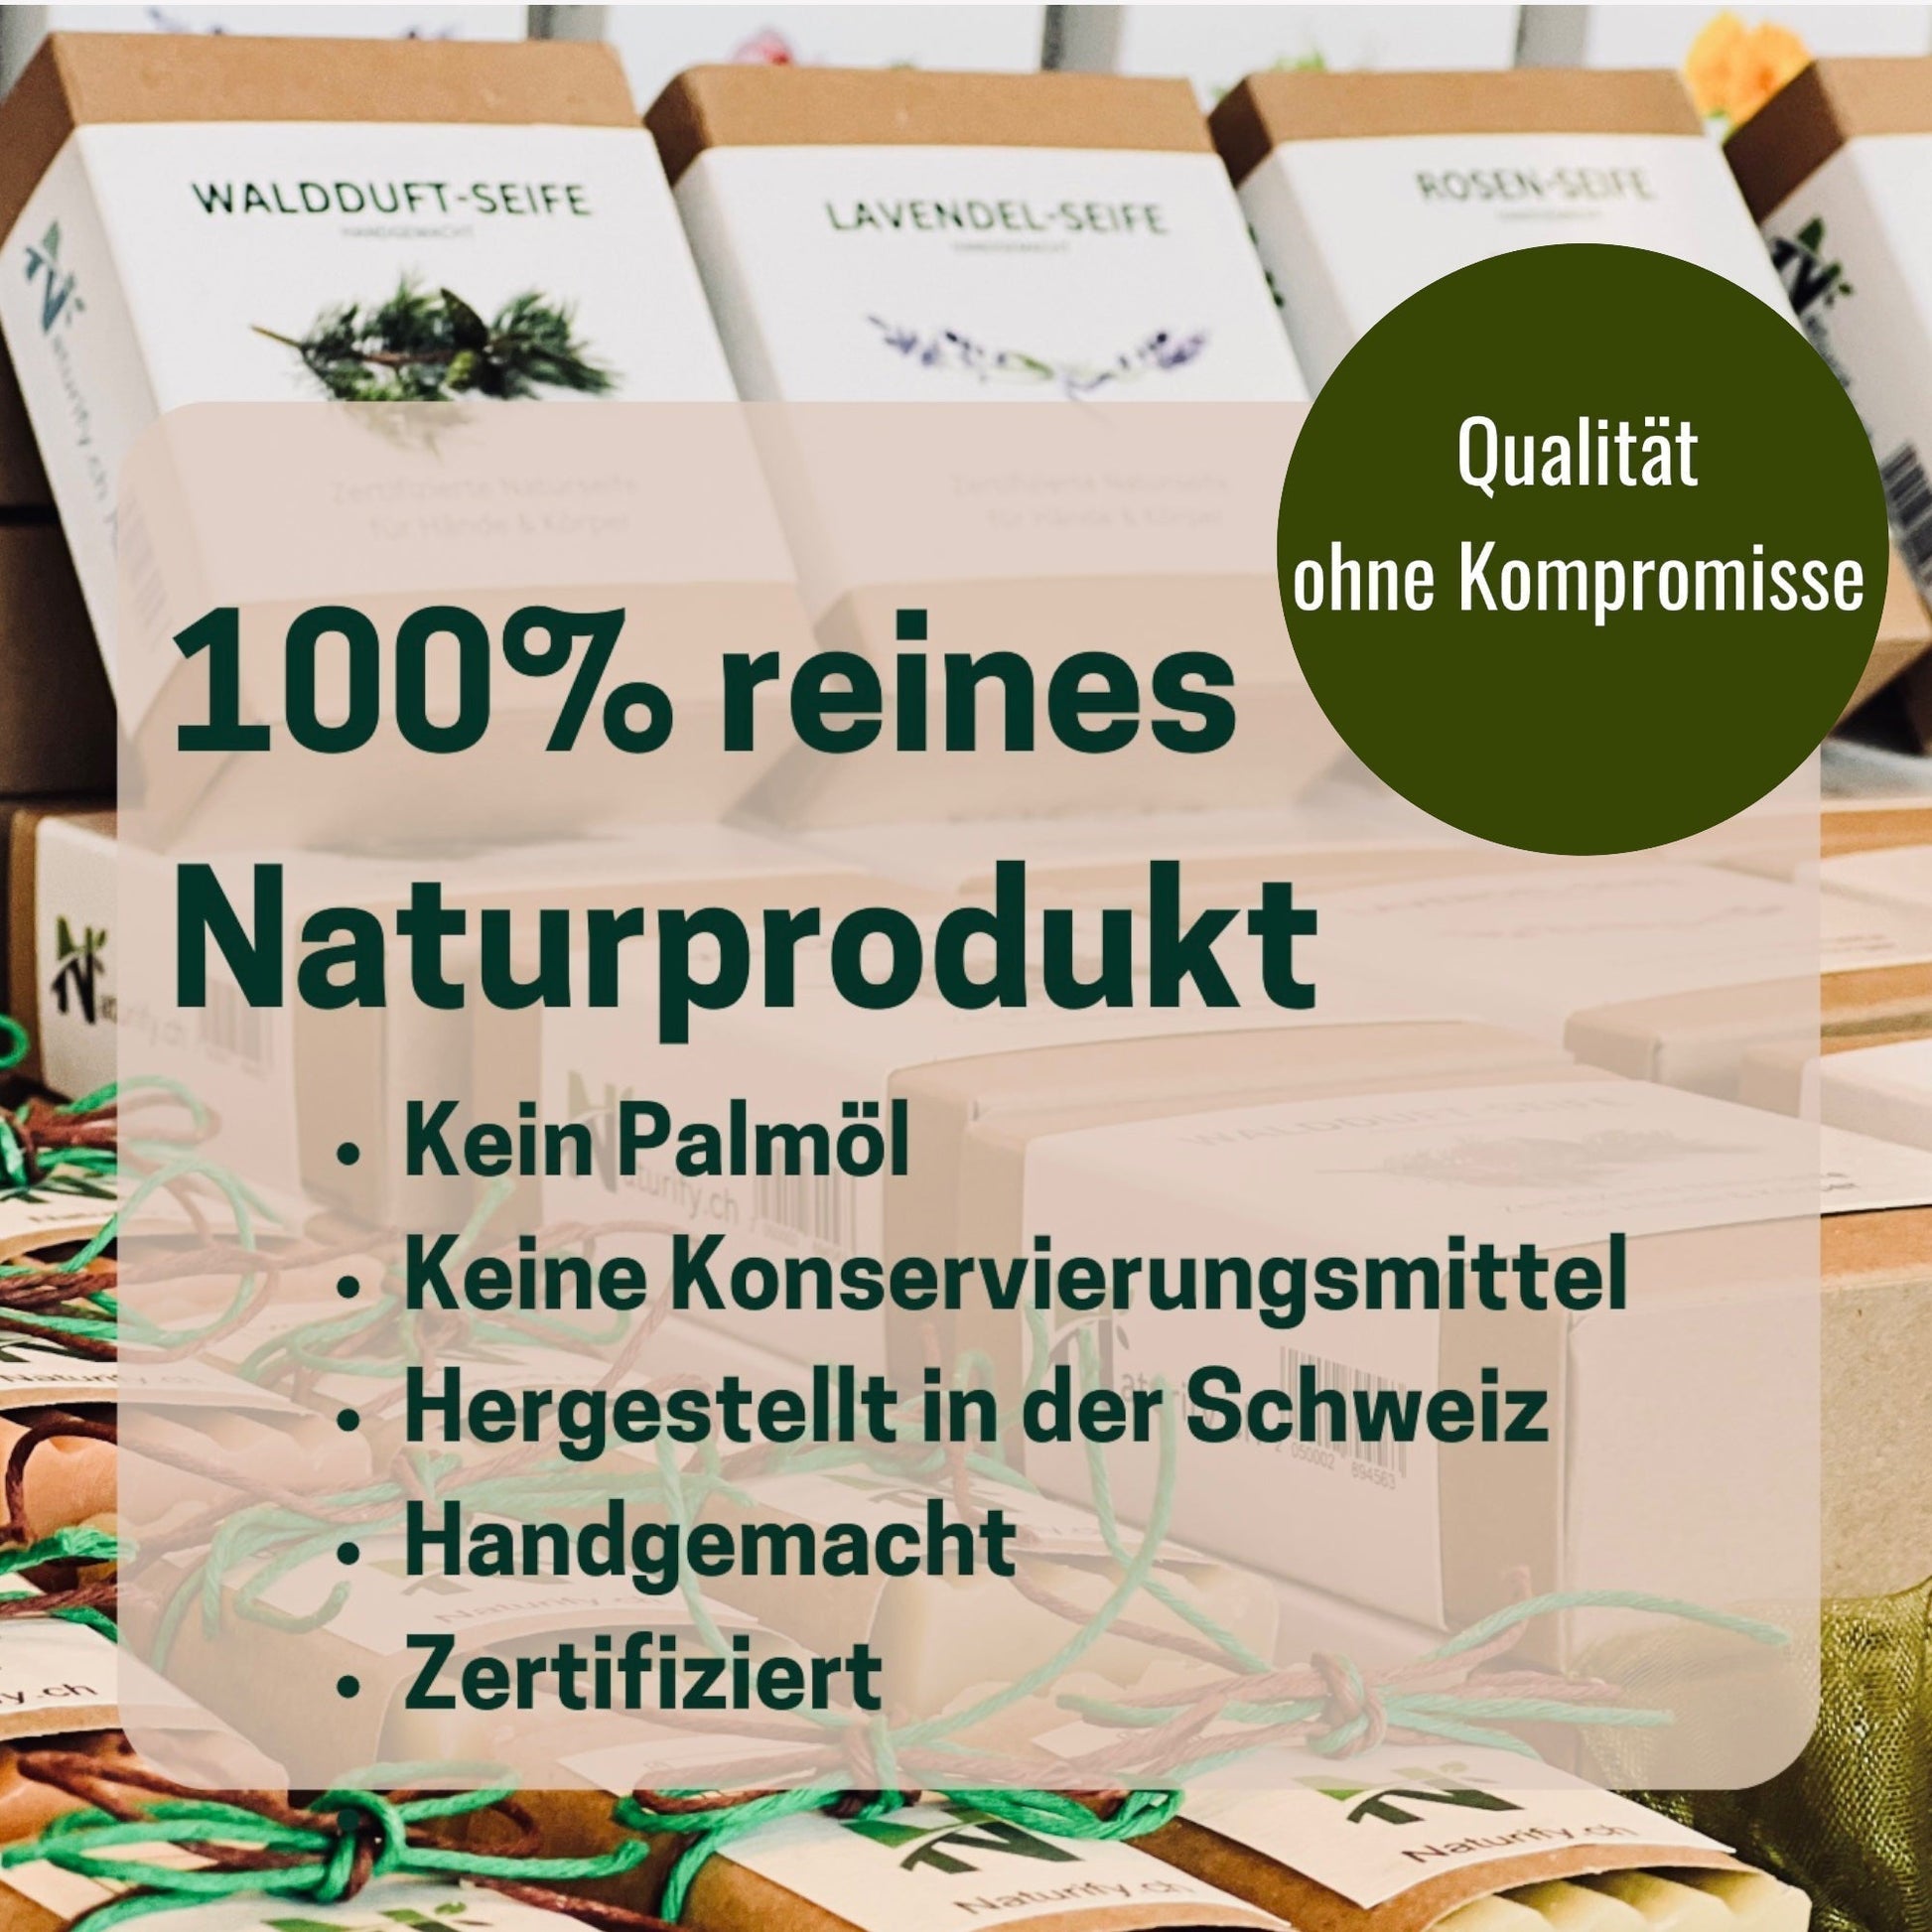 Waldduft-Seife & Magnethalter | Promotion - #shop_name